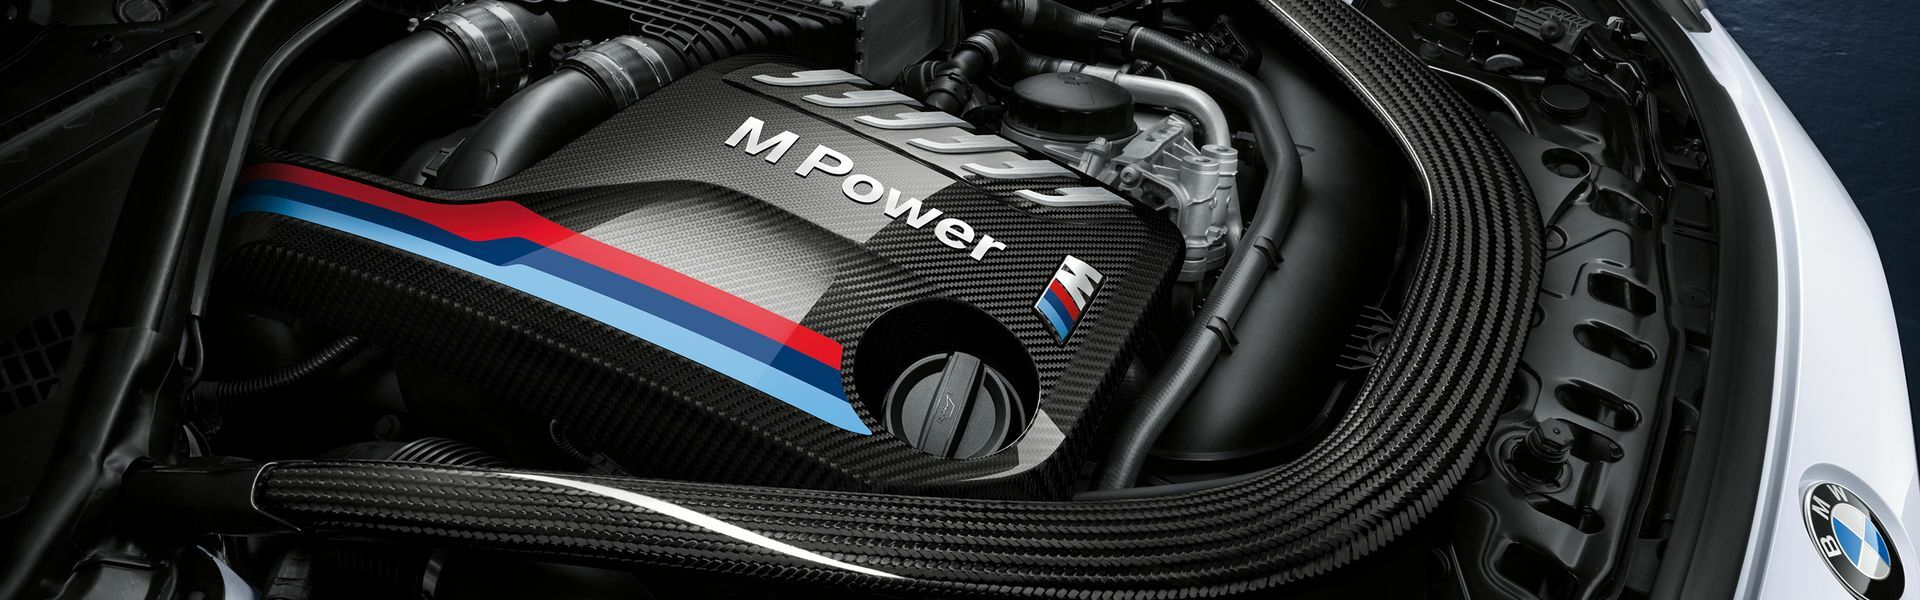 Zvýšení výkonu/ Softwarové úpravy/ Drobné performance díly pro automobil BMW M2 F87 COMPETITION